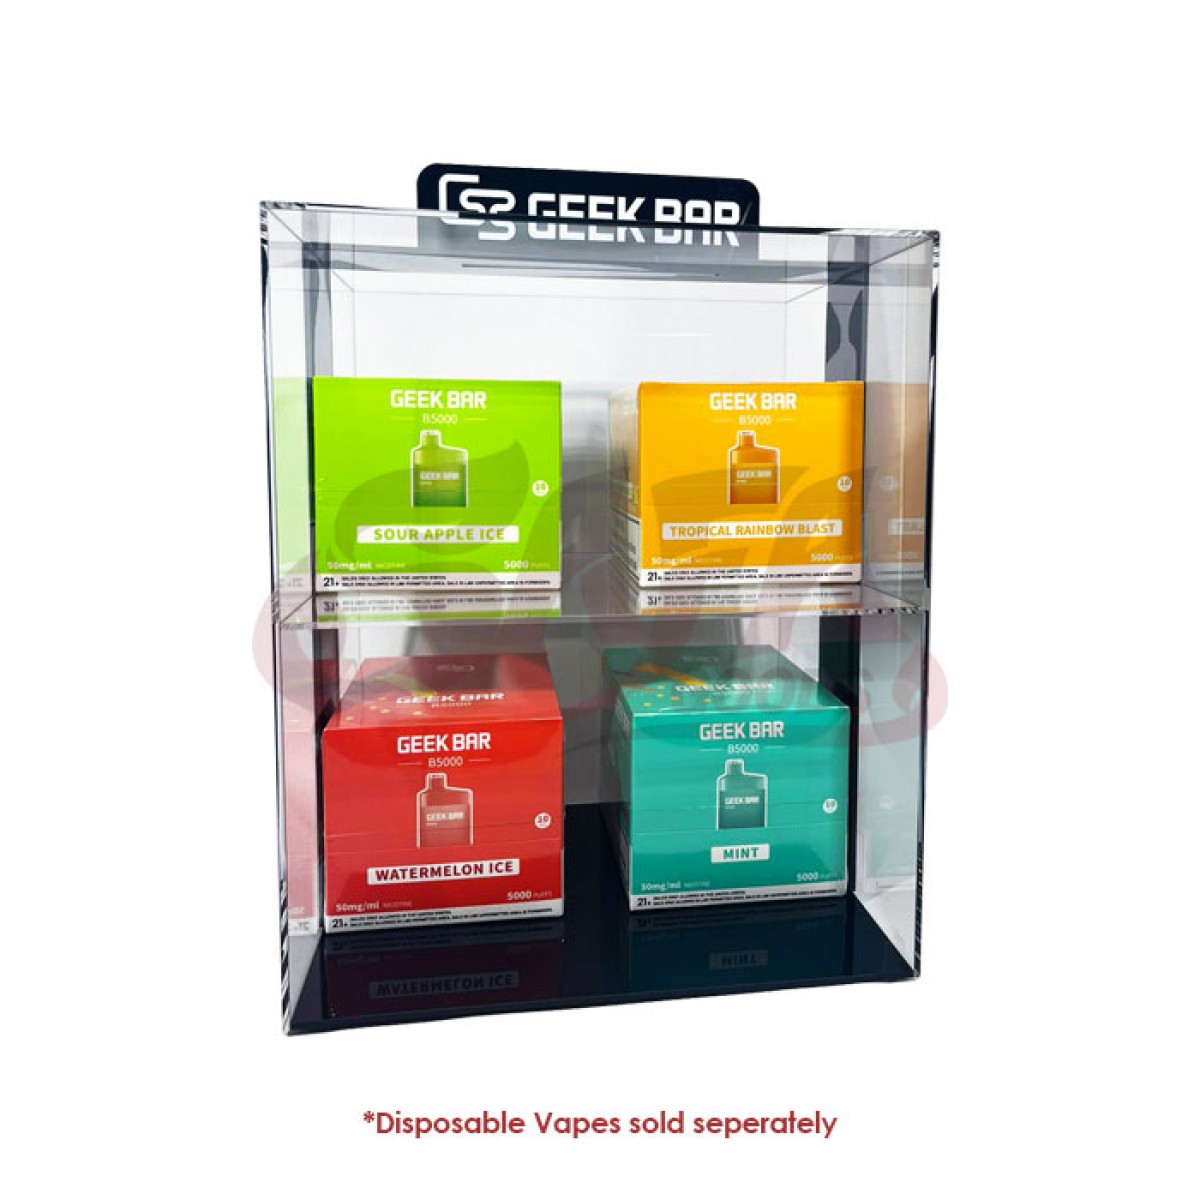 Geekbar B5000 Display Cases